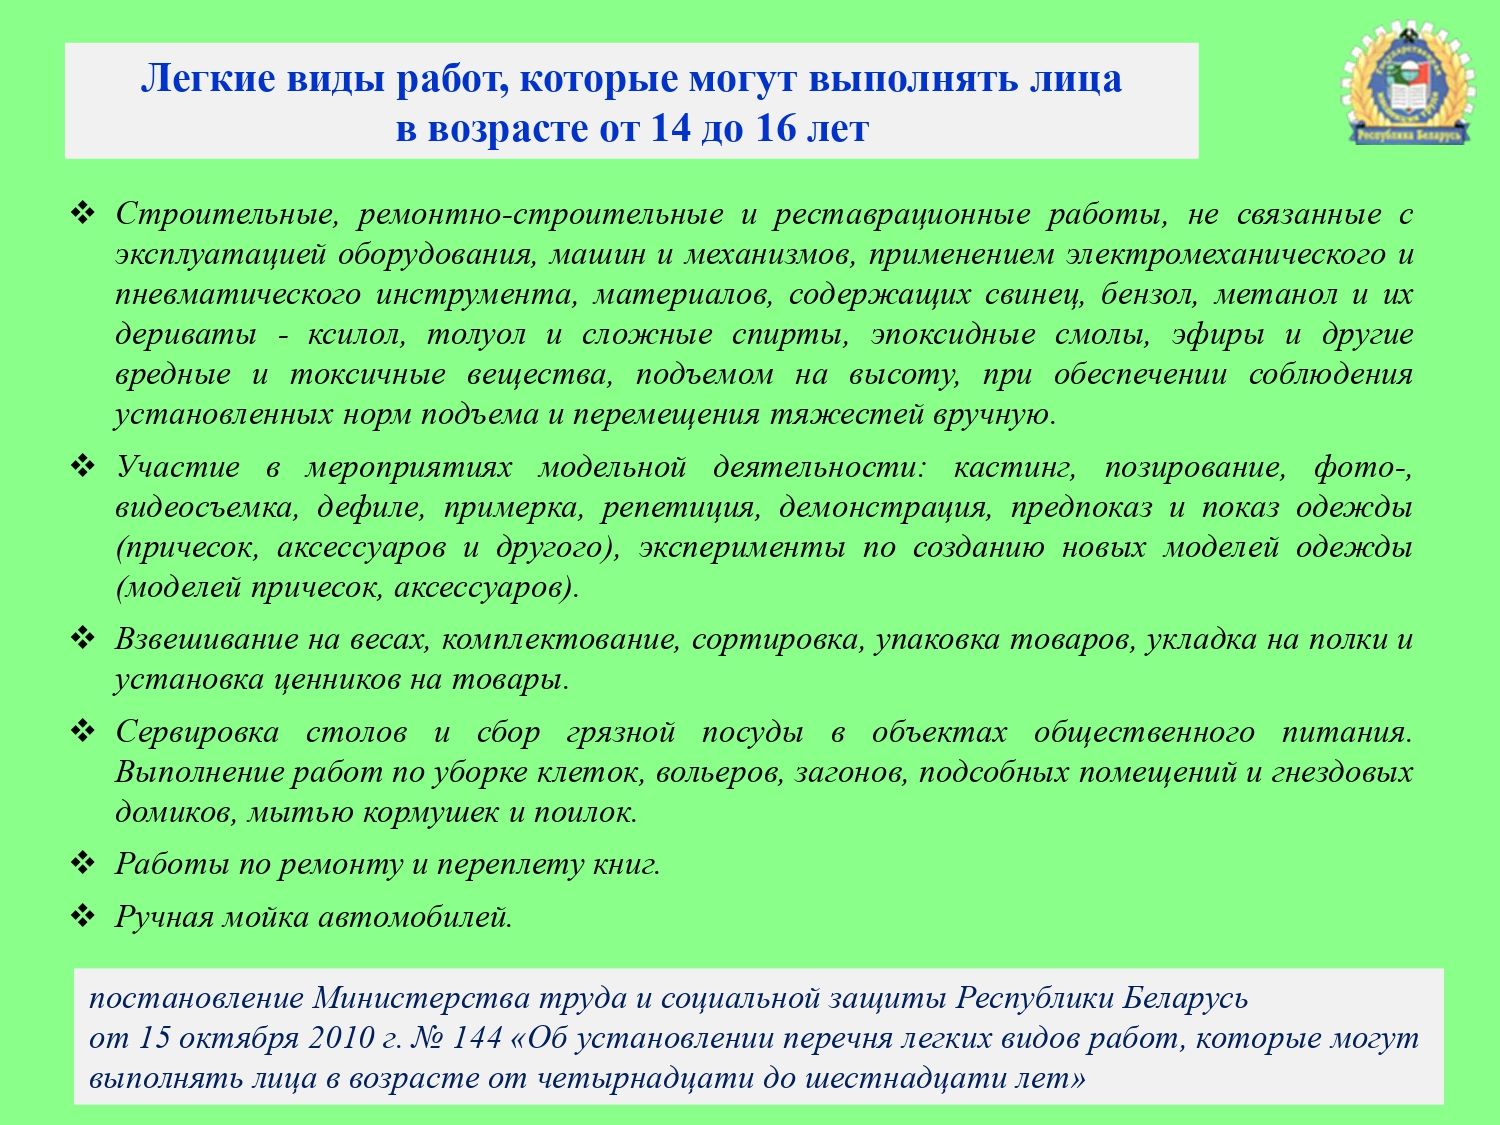 Trudoustrojstvo molodezhi - DGIT 2023-1_page-0011